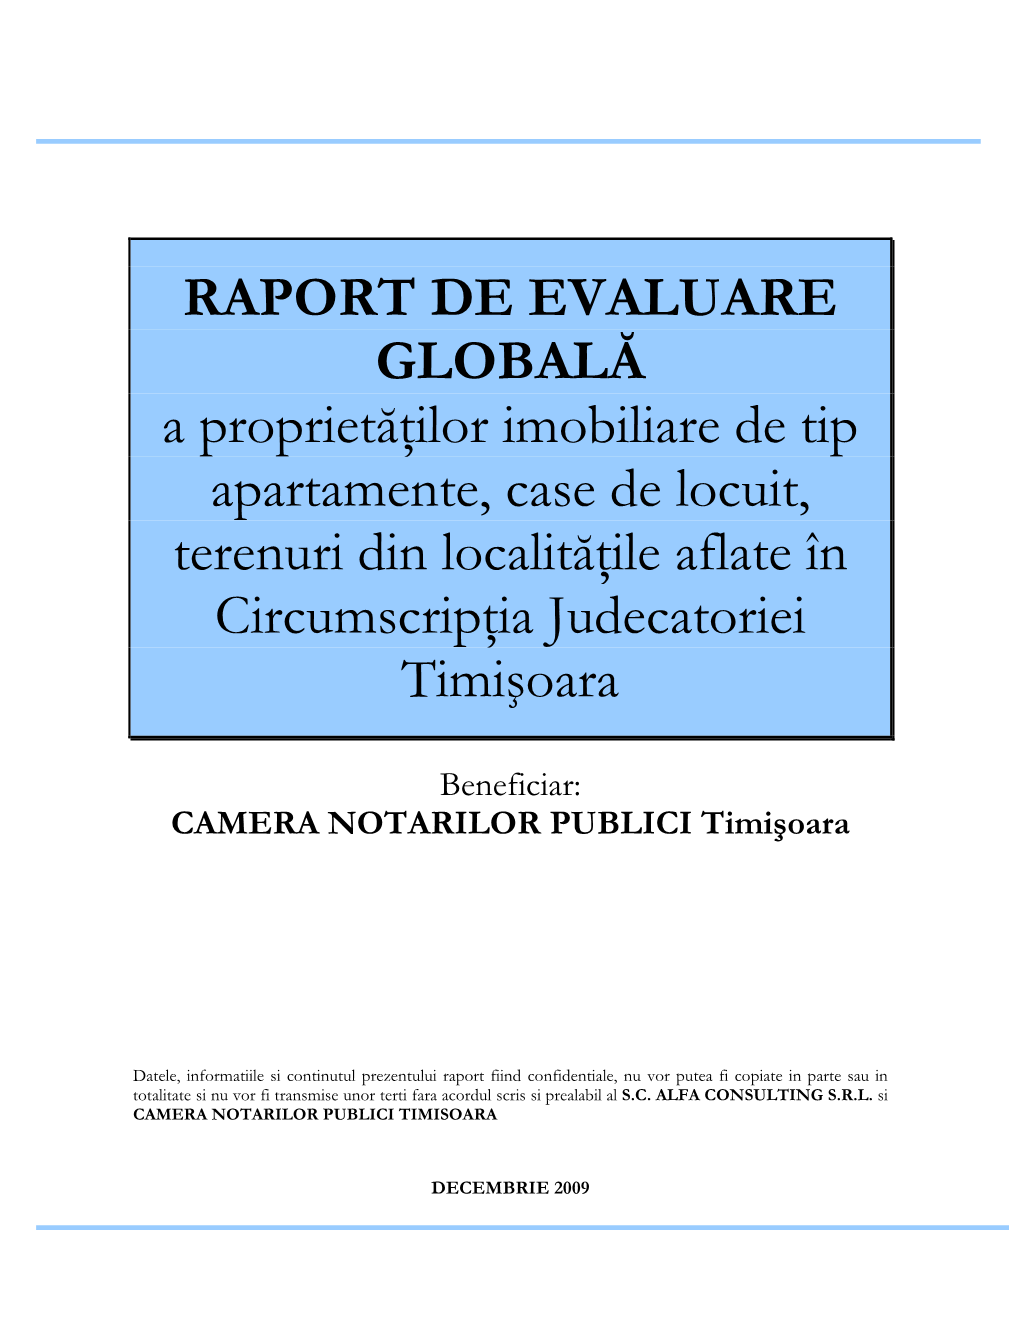 Raport Evaluare Globala Timisoara 2010